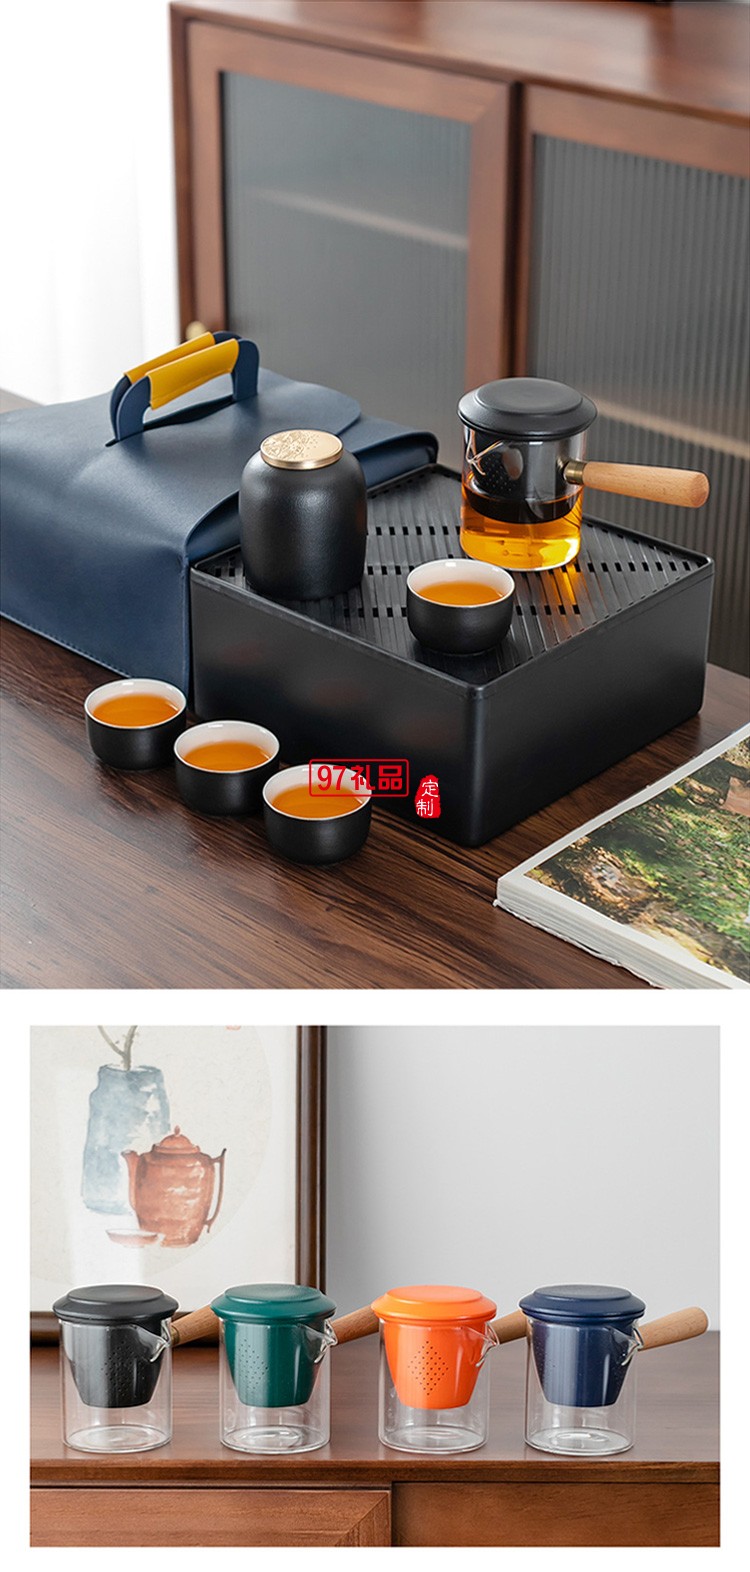 新品创意陶瓷便携旅行茶具套装茶盘皮包户外一壶四杯 可定制logo